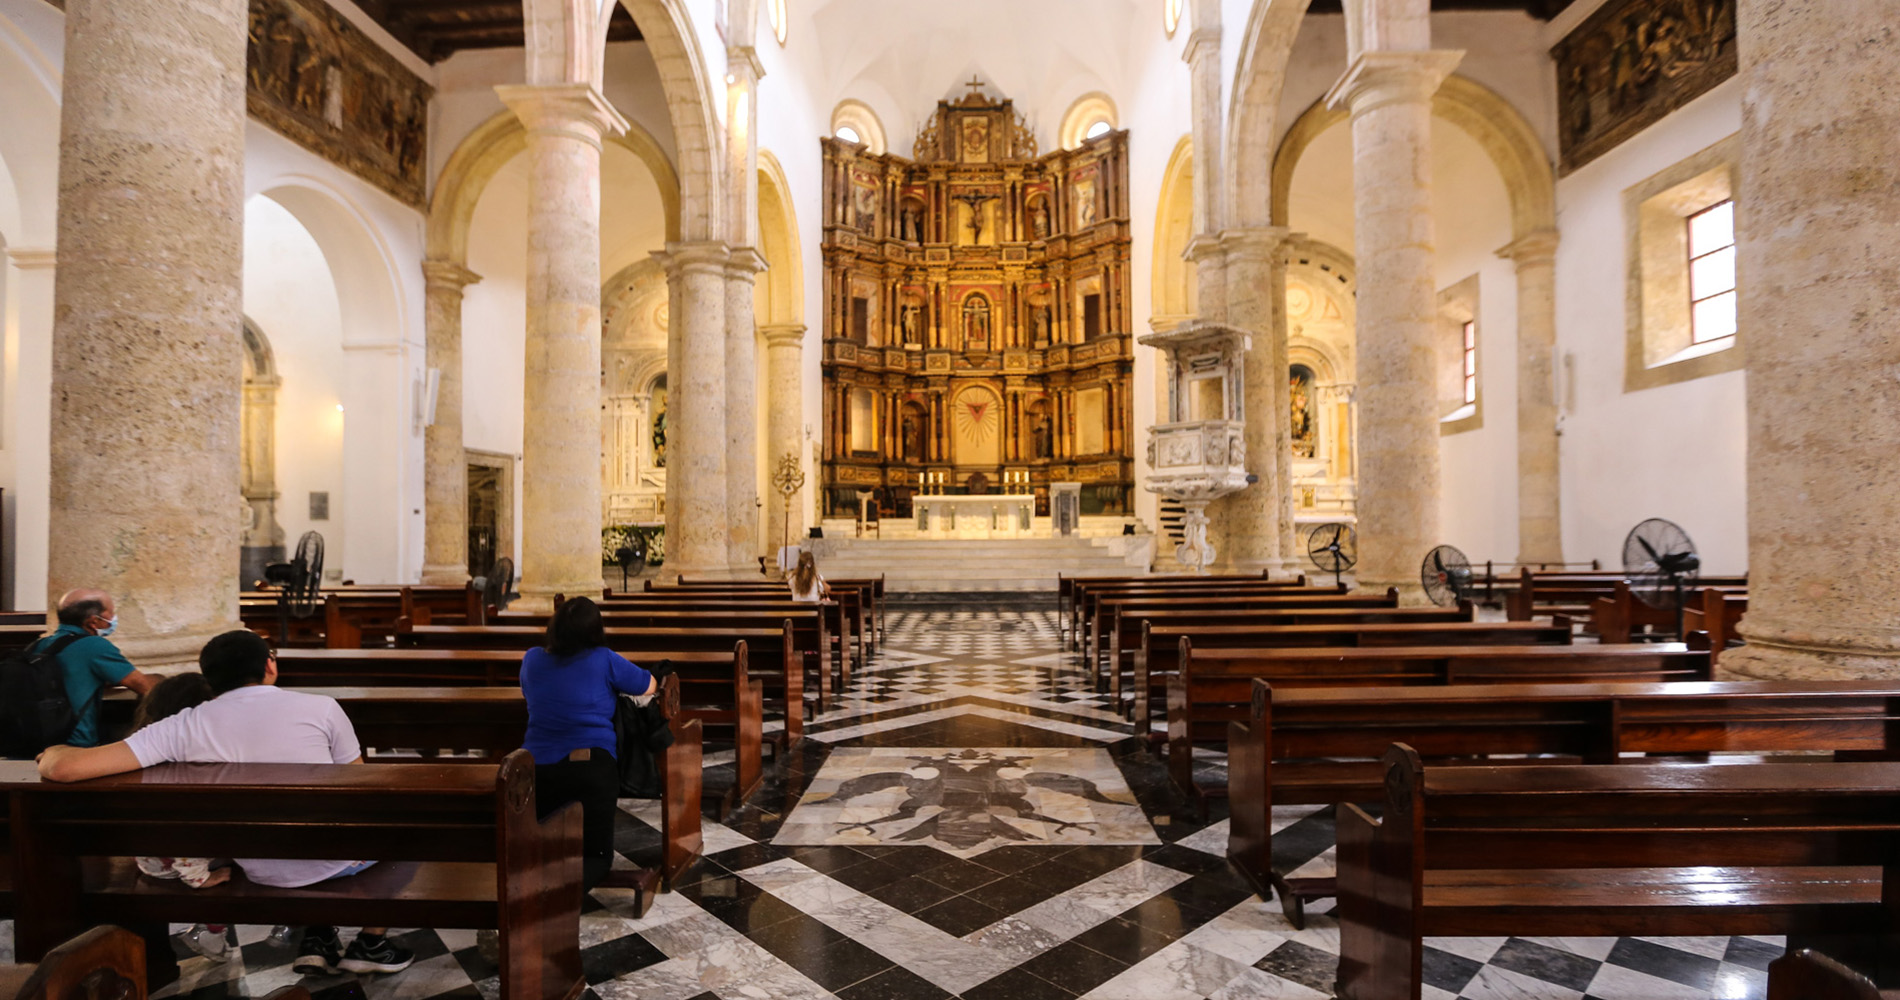 Intérieur de la cathédrale avec son magnifique retable